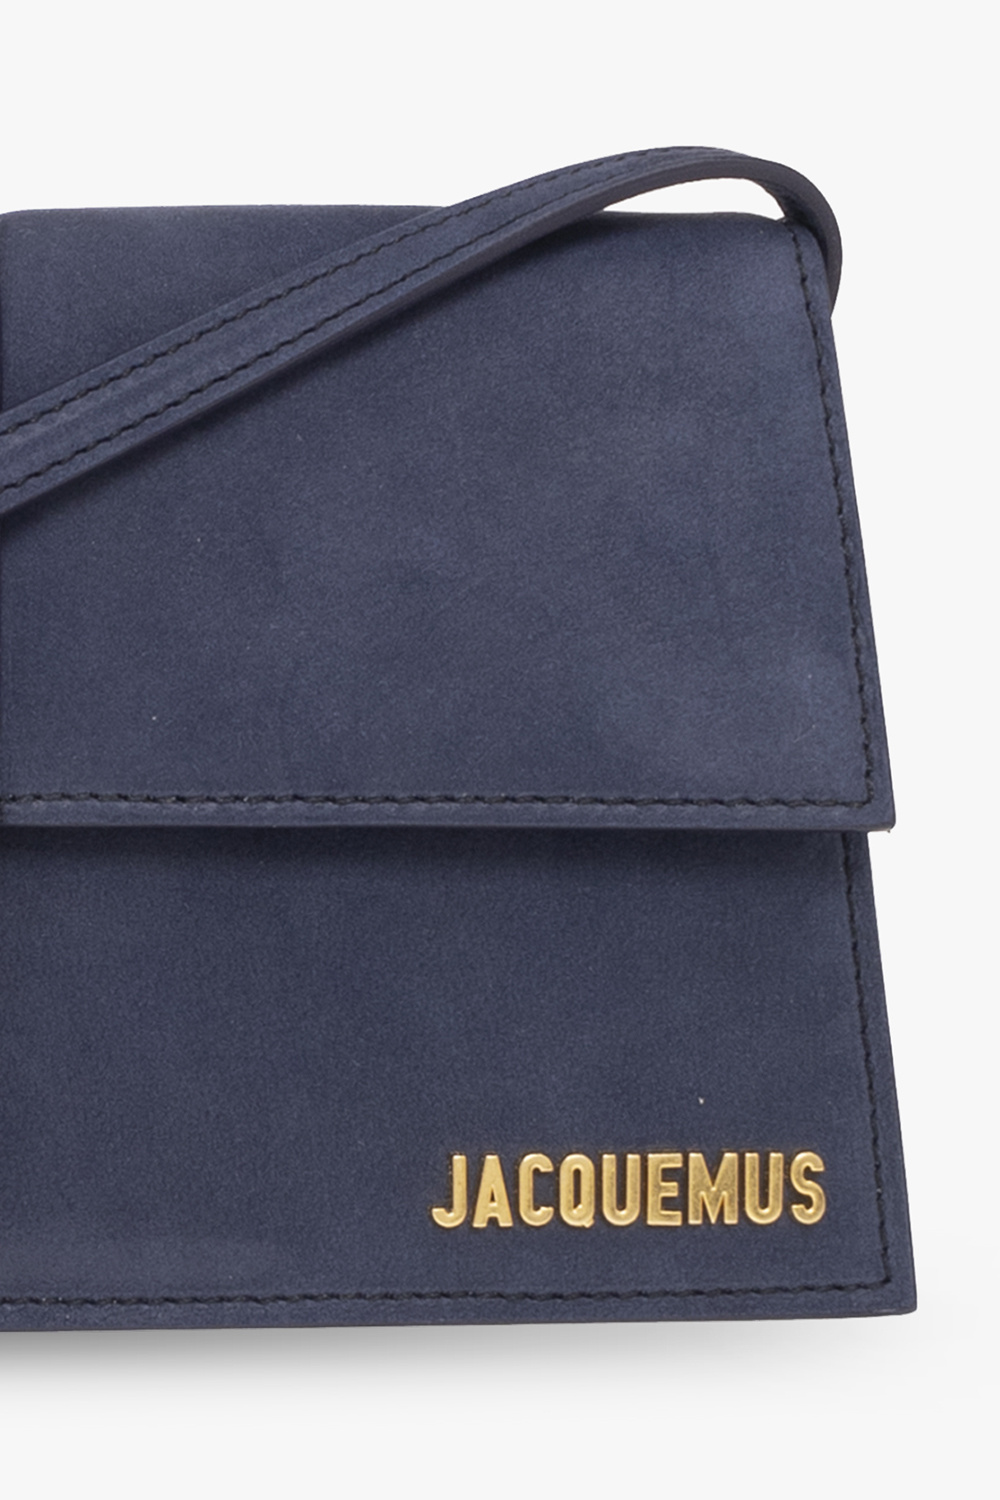 Jacquemus ‘Le Bambino Long’ shoulder body bag